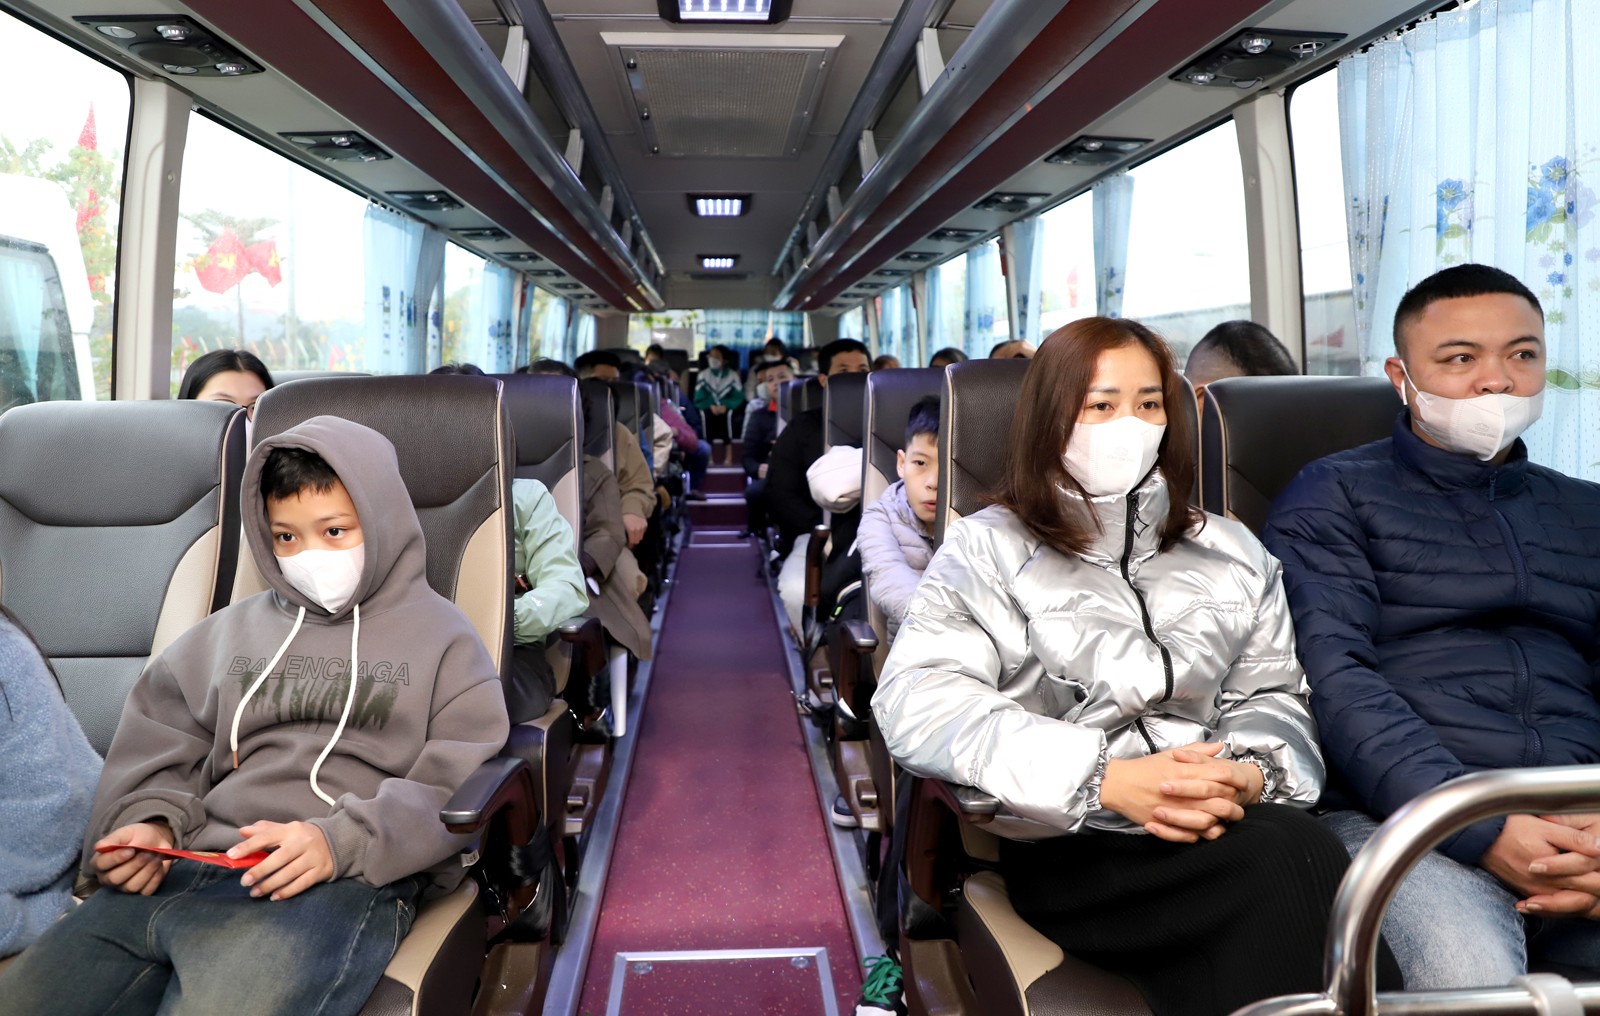 TRỰC TUYẾN: Những chuyến xe ấm tình Công đoàn đưa công nhân về quê đón Tết